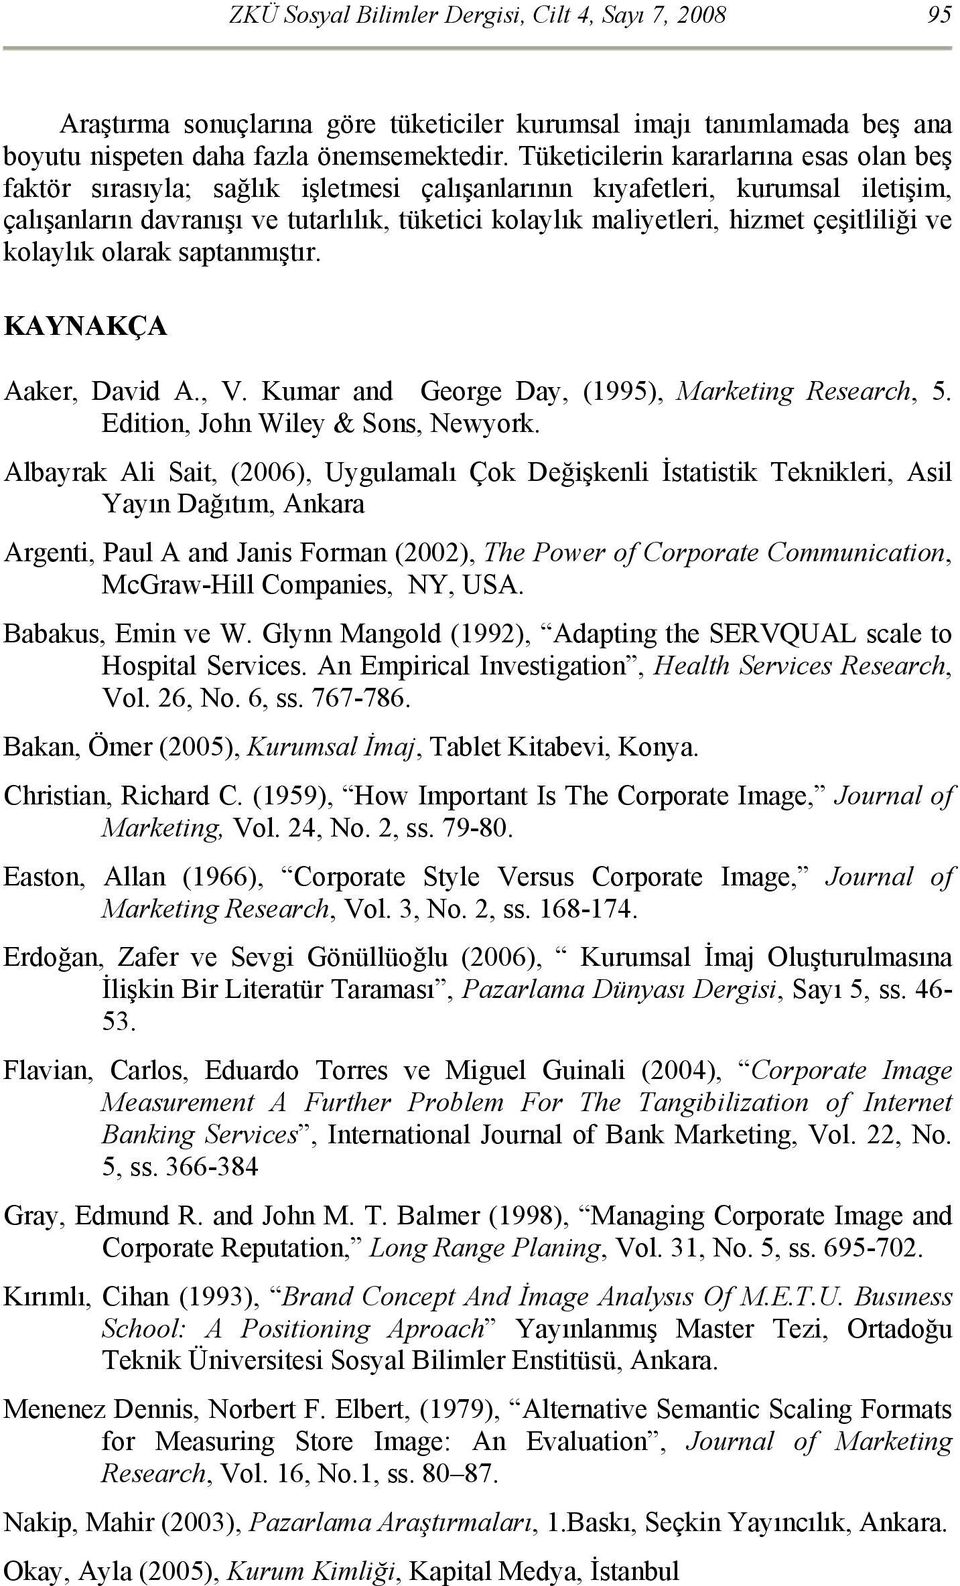 çeşitliliği ve kolaylık olarak saptanmıştır. KAYNAKÇA Aaker, David A., V. Kumar and George Day, (1995), Marketing Research, 5. Edition, John Wiley & Sons, Newyork.